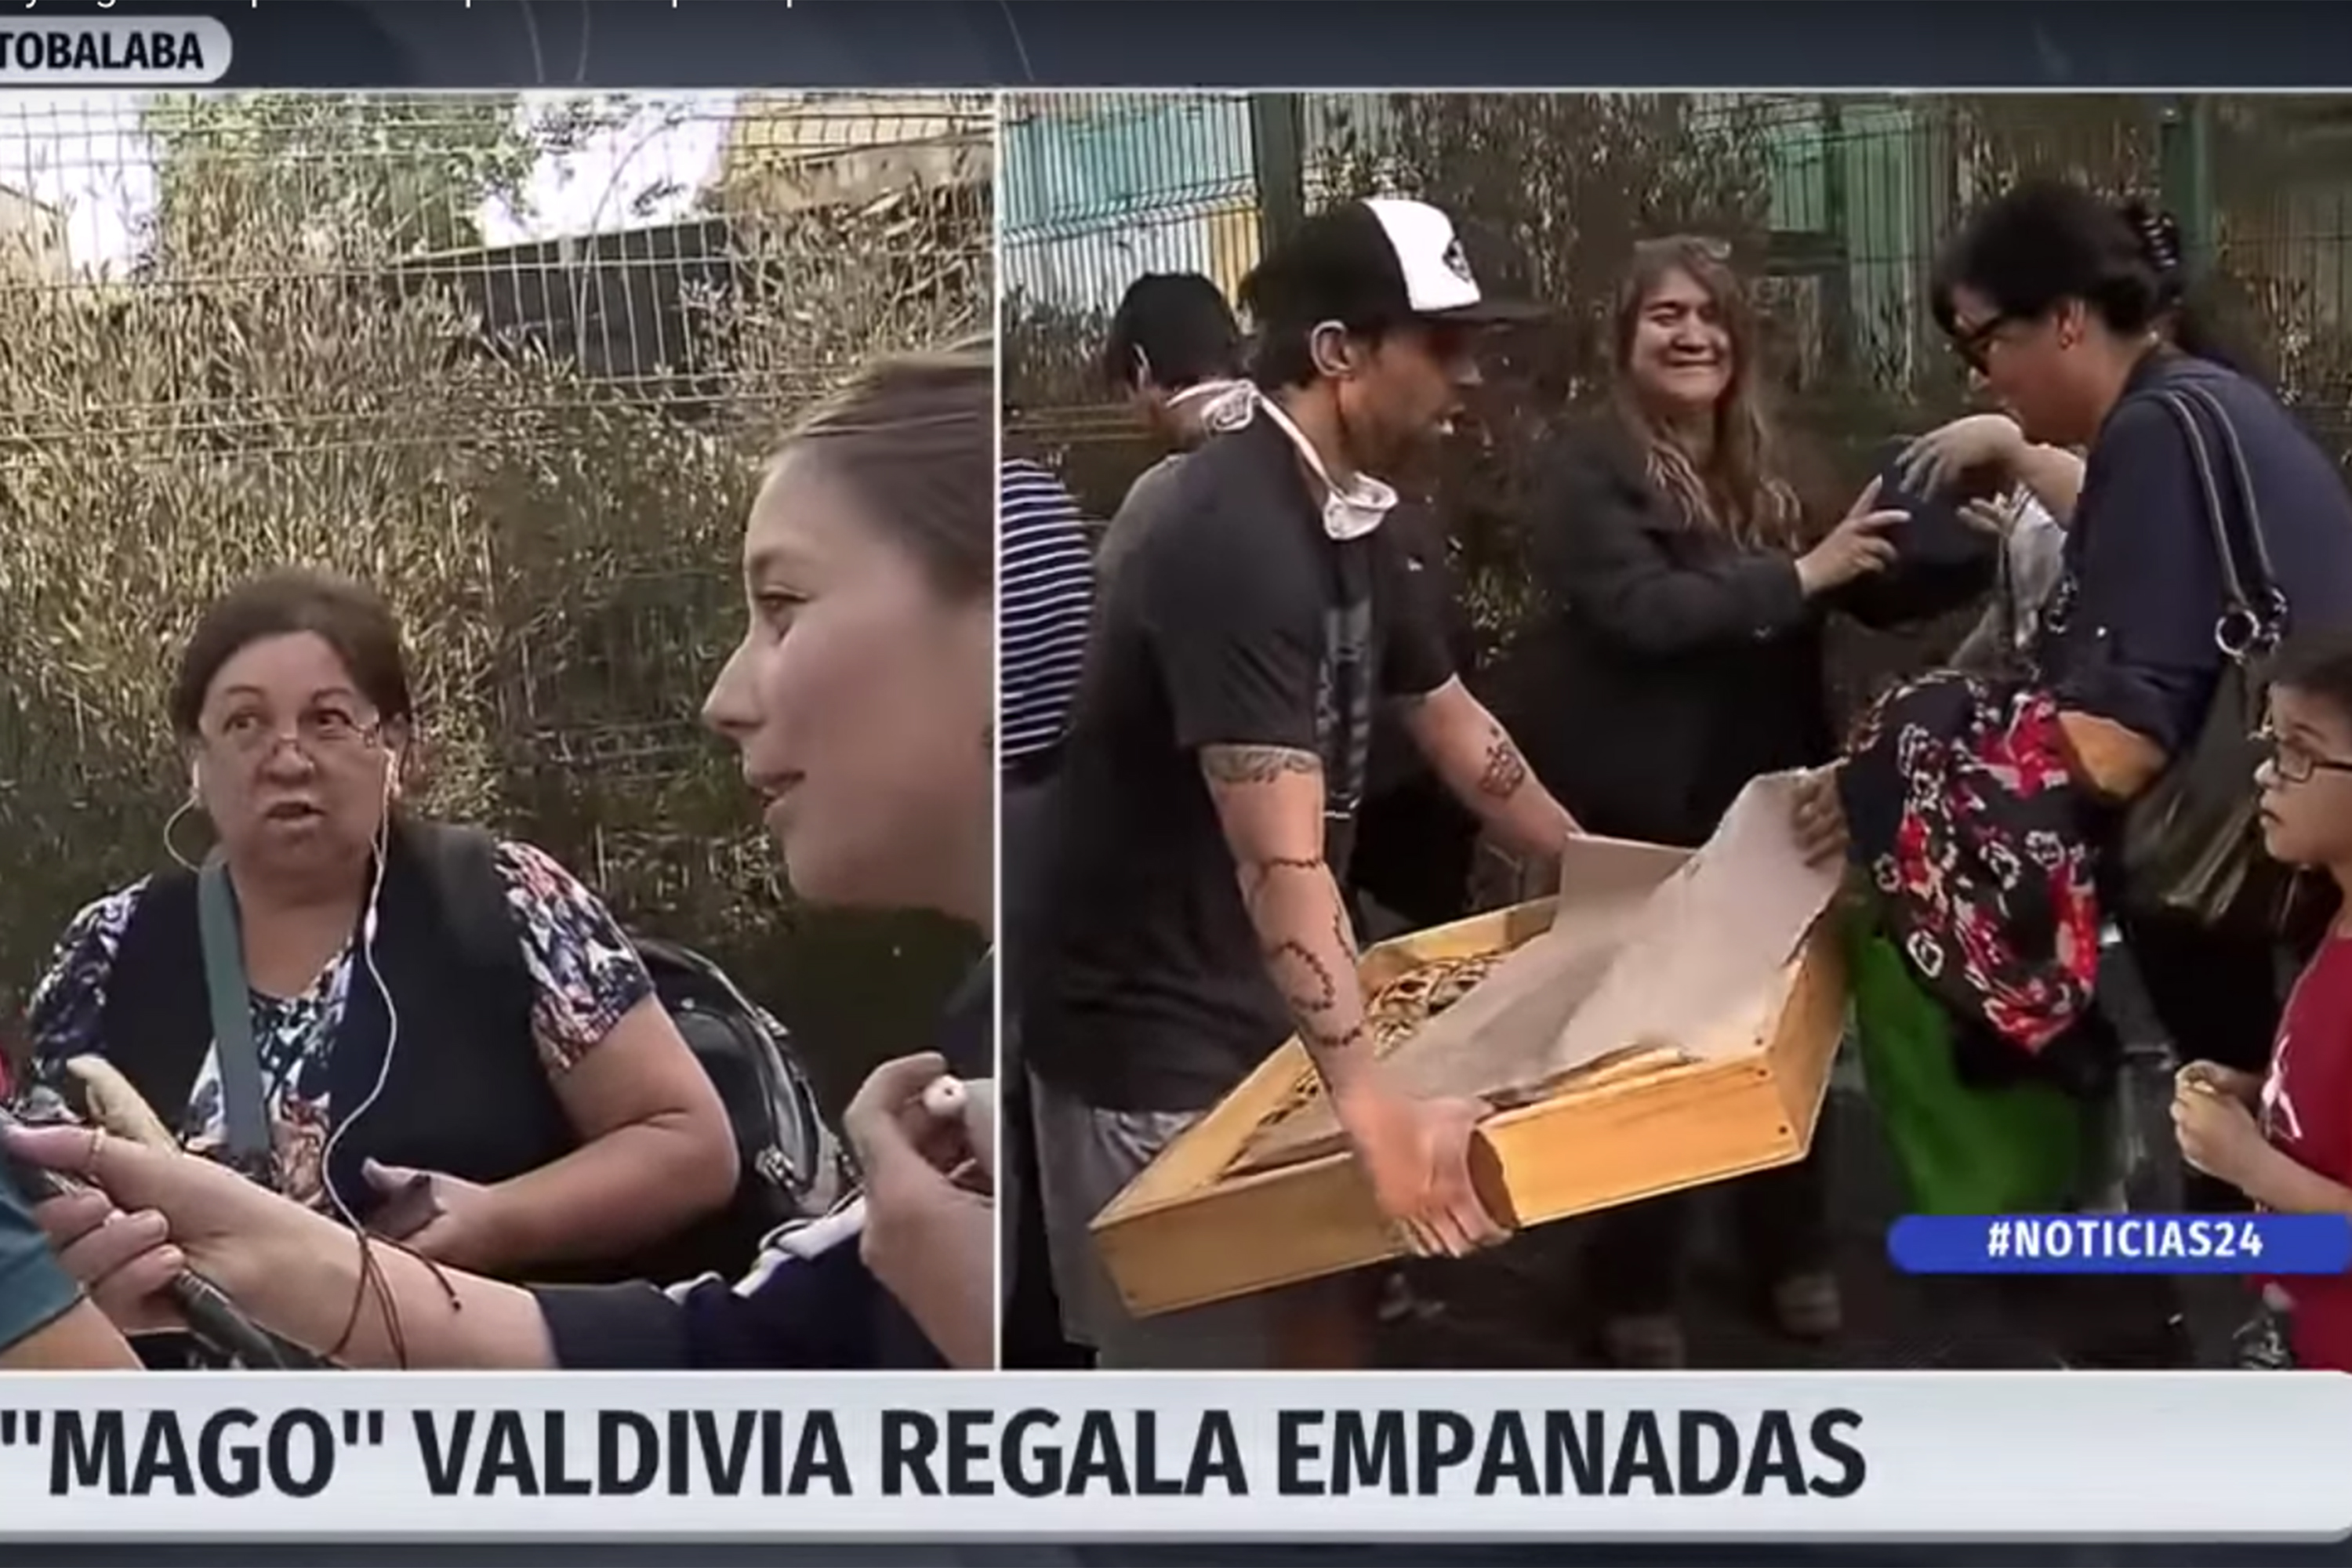 Valdivia distribui empanadas a usuários do transporte público de Santiago